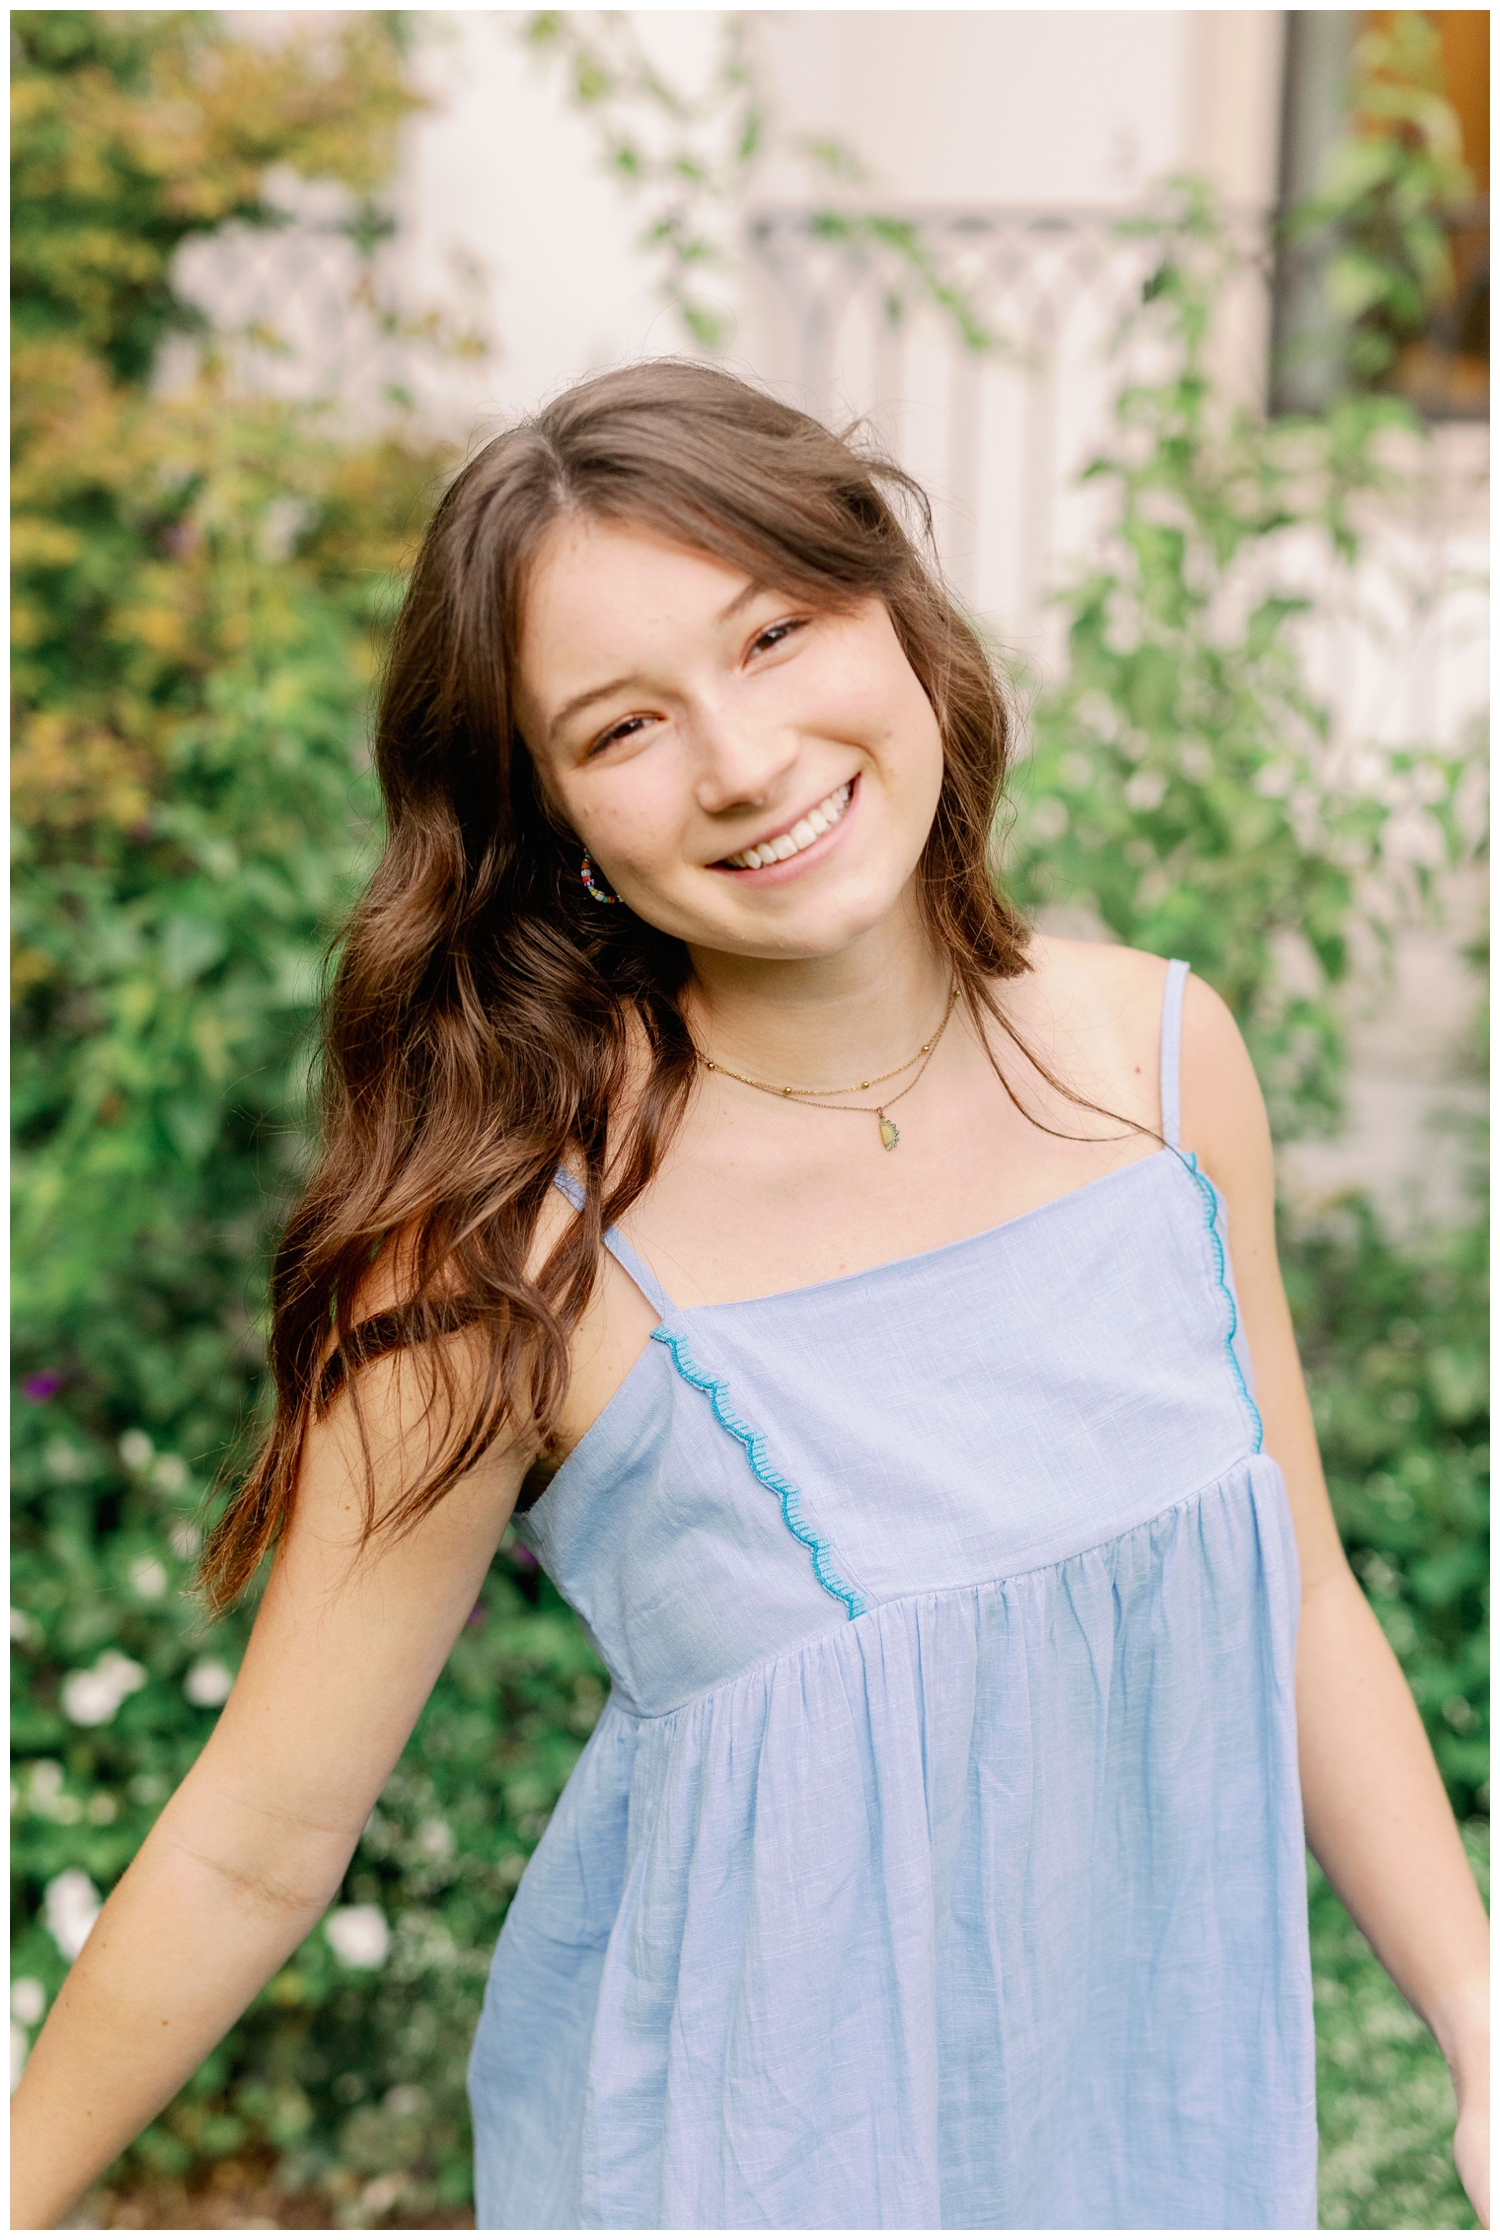 high school senior girl in blue dress posing for outdoor portrait for senior spokesmodel team Houston